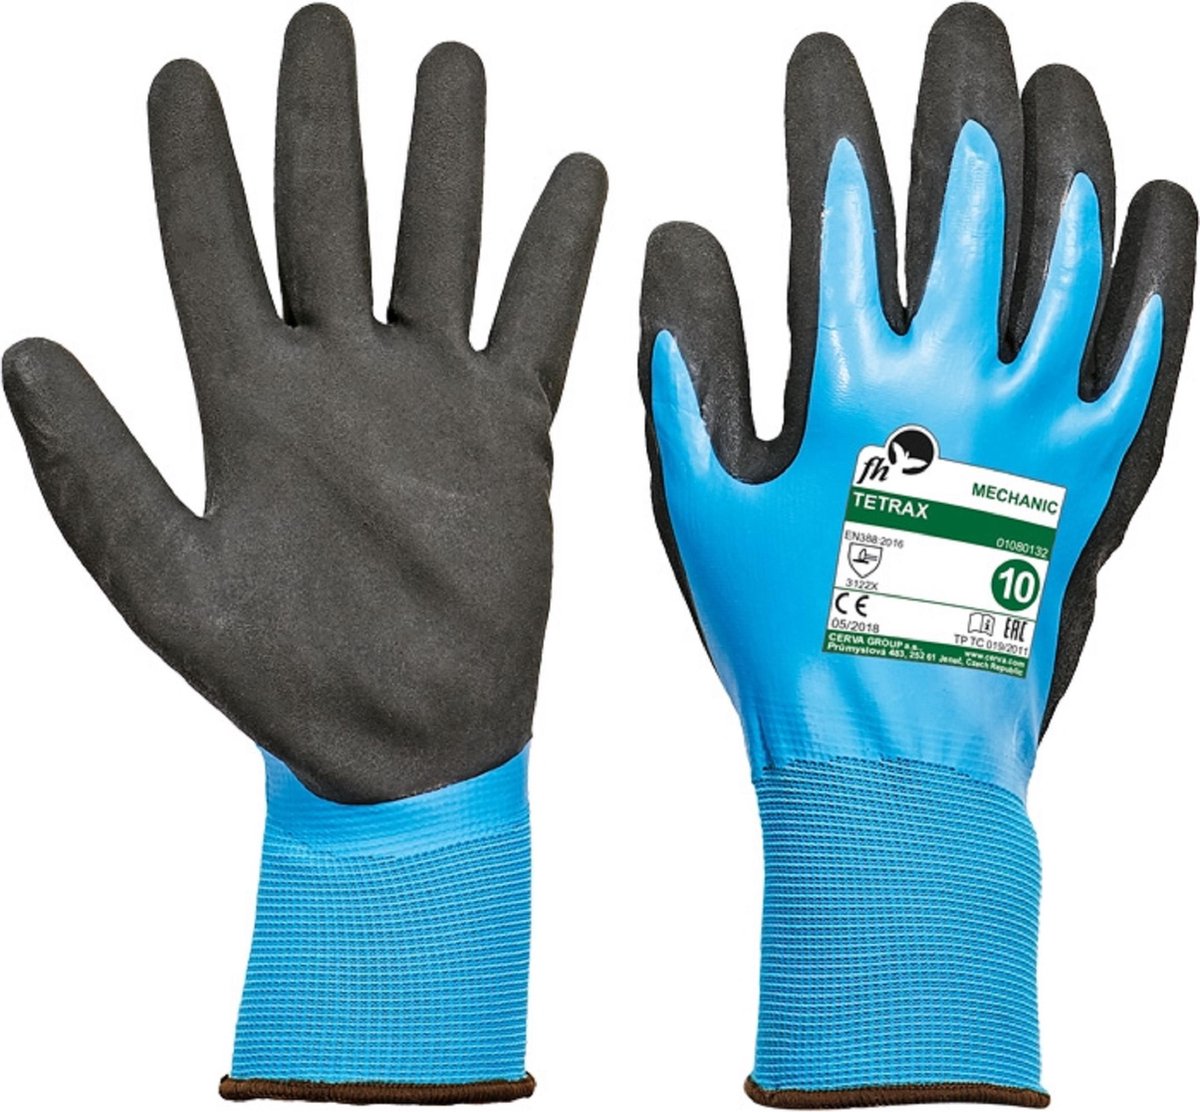 Vloeistofdichte handschoen met grip Tetrax maat 8/M - 6 paar